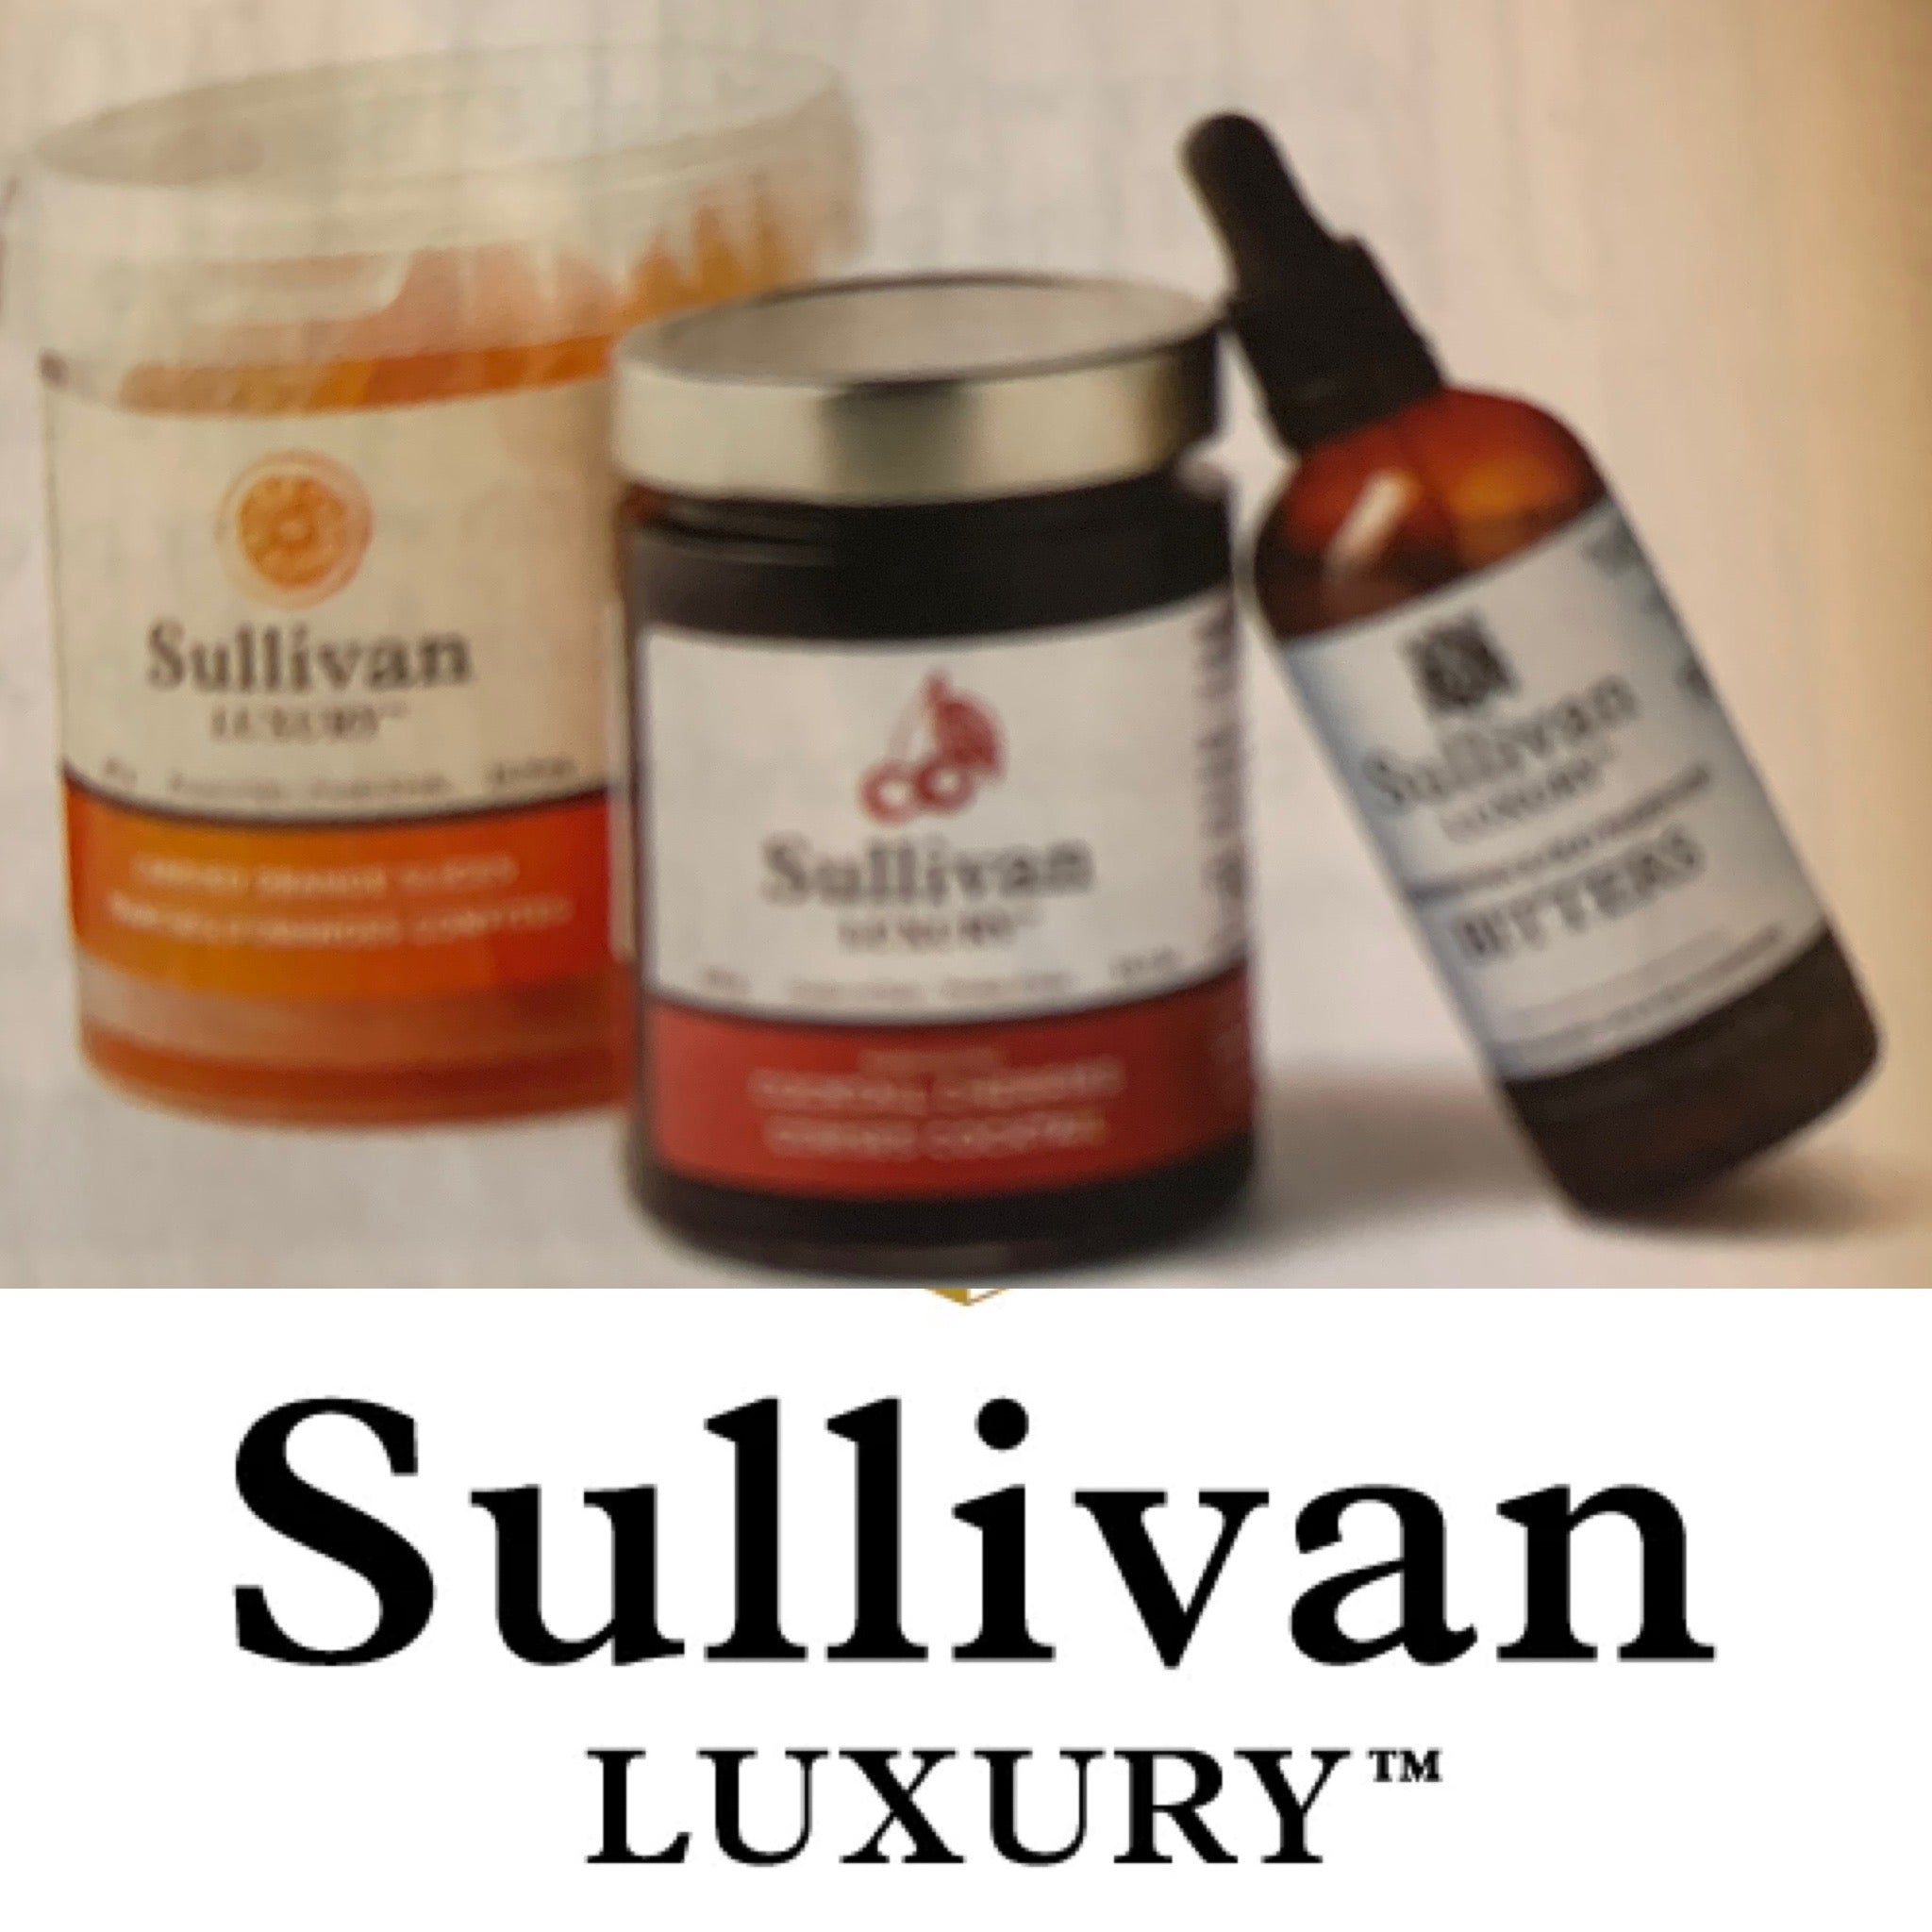 Sullivan Luxury Manhattan & Old Fashioned Bitters